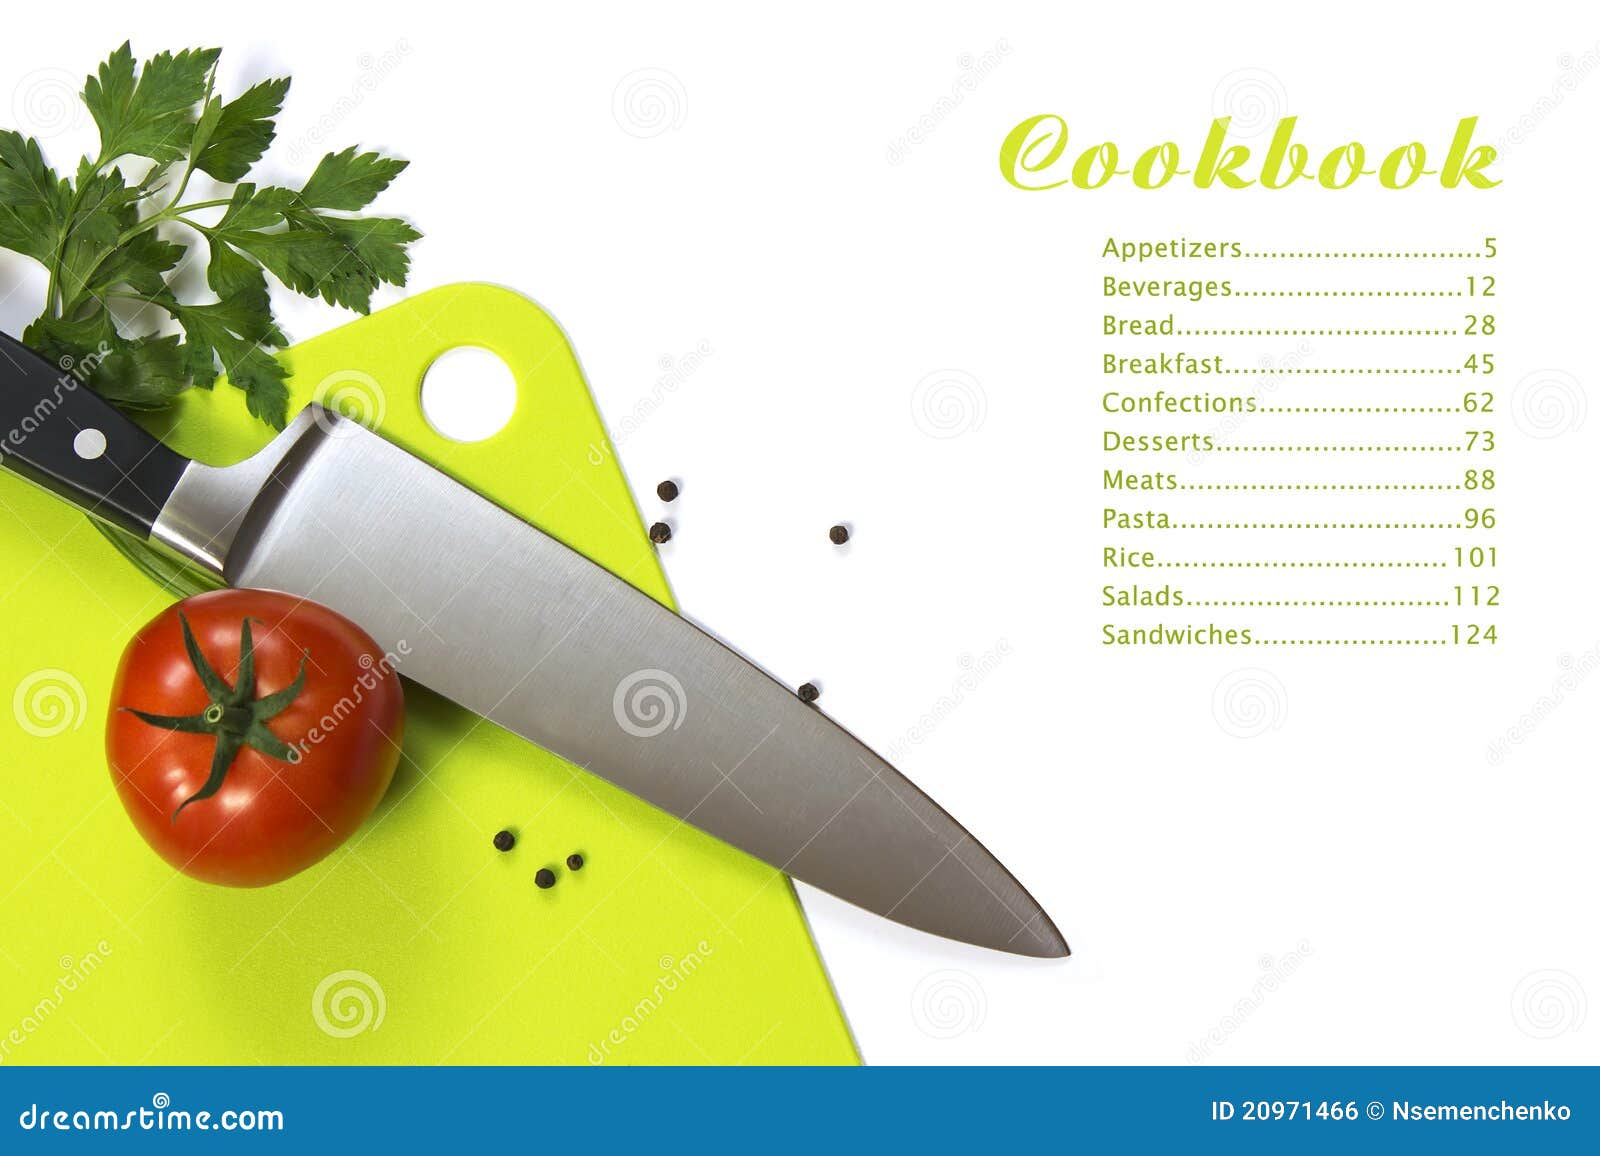 Knife Cookbook Download All Facebook